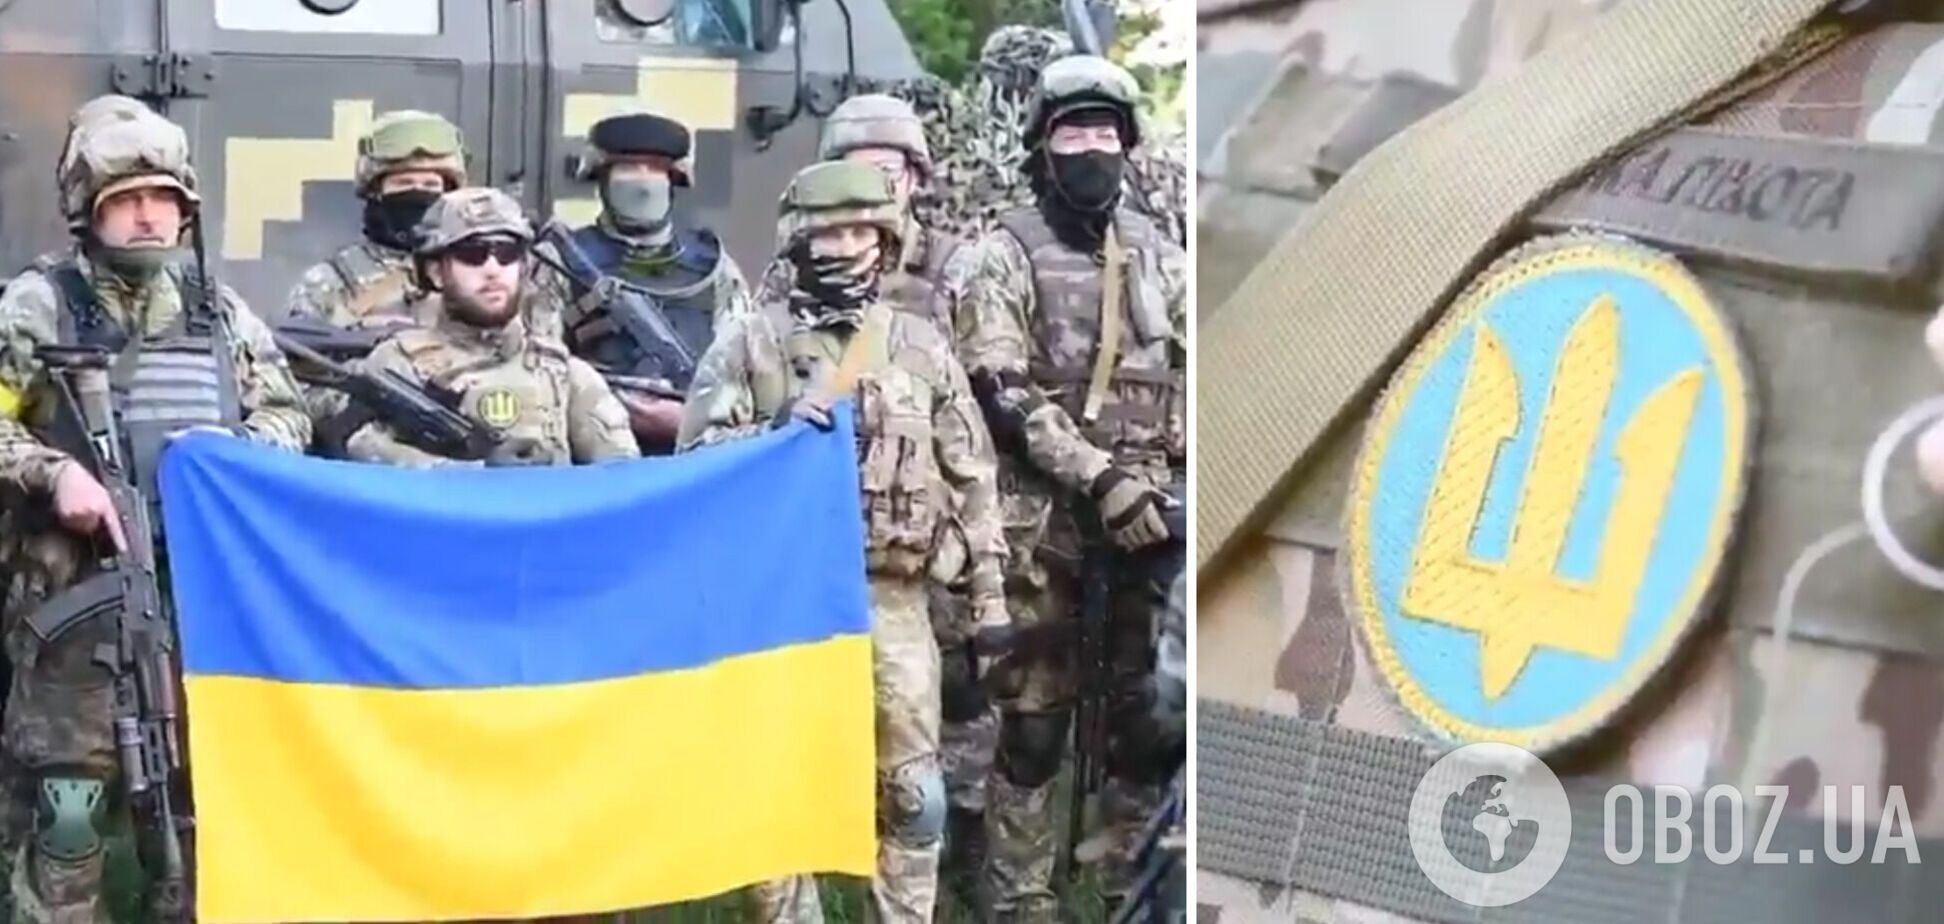 'На землі, в морі та повітрі – готовий вступити в бій': з'явилося відео присяги морпіхів українському народу